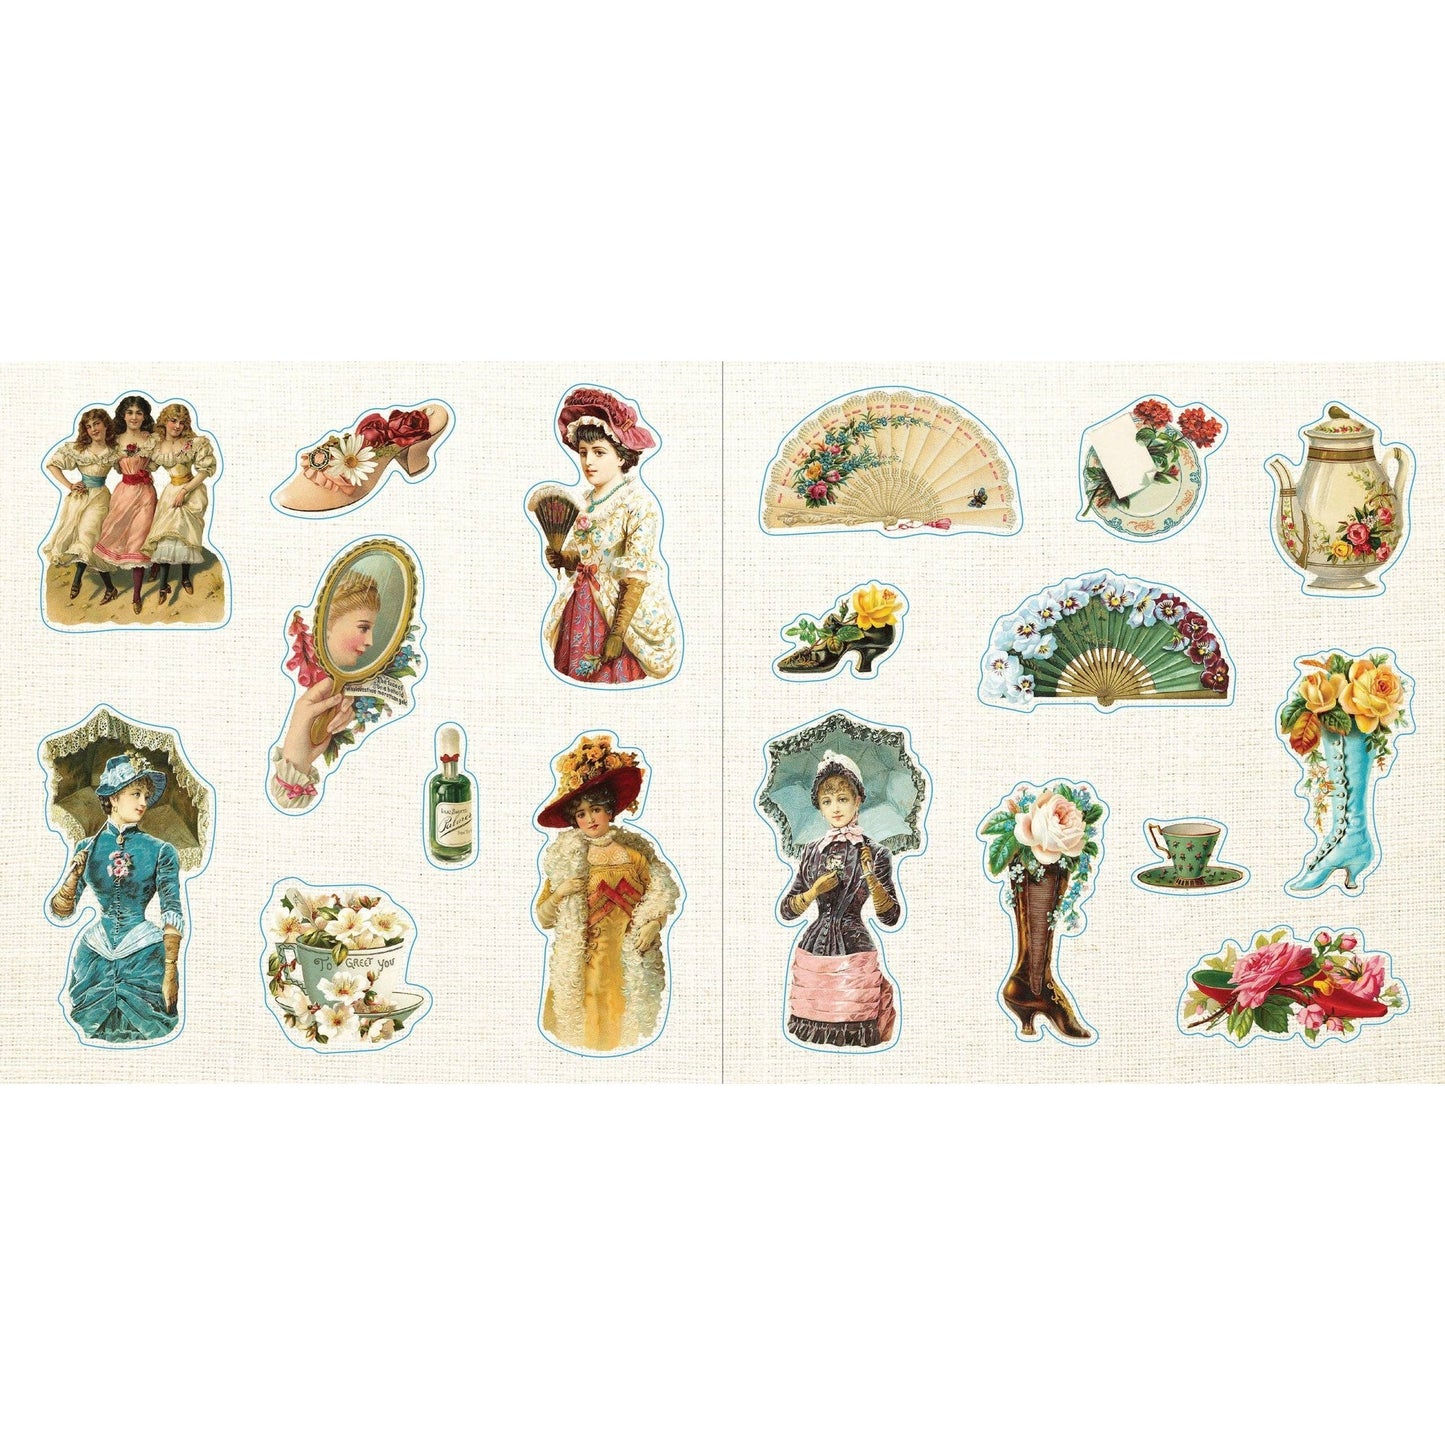 Loads of Ephemera Stickers | An Unforgettable Vintage Sticker Book | 580 Decals